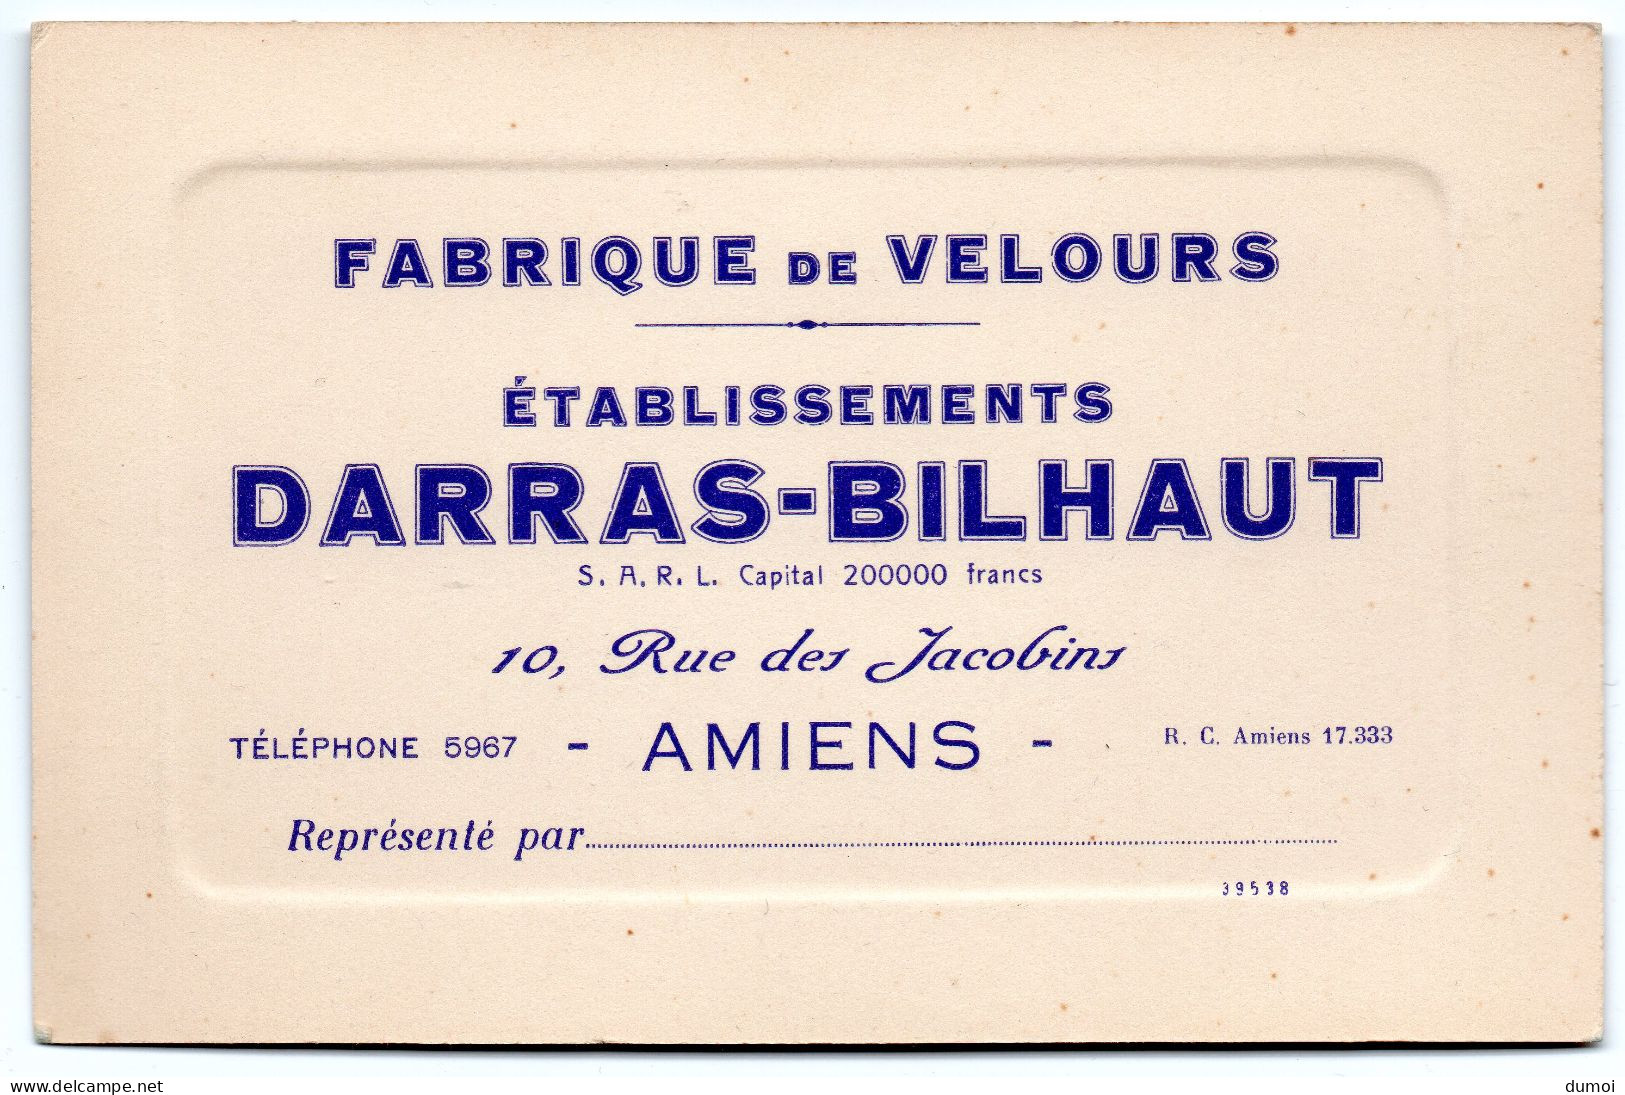 AMIENS   -  10 Rue Des Jacobins  Fabrique De Velours Etablissement DARRAS - BILHAUT - Visiting Cards